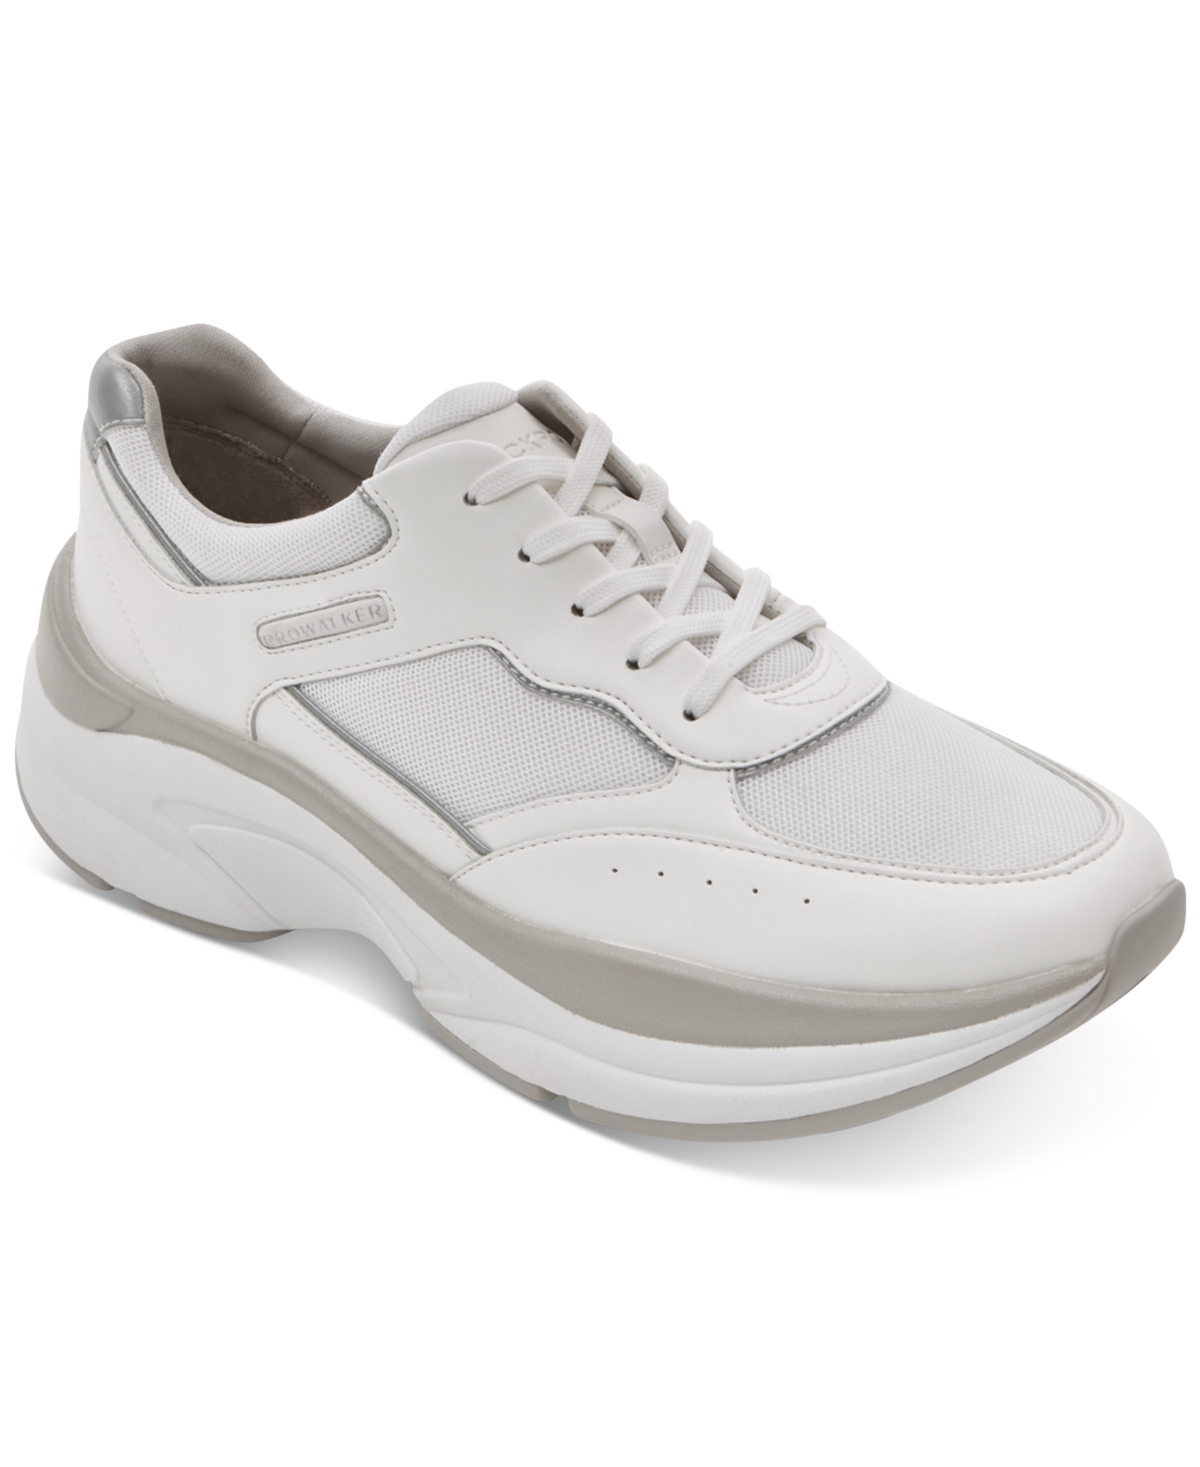 Women's Prowalker Lace-Up Sneakers - White